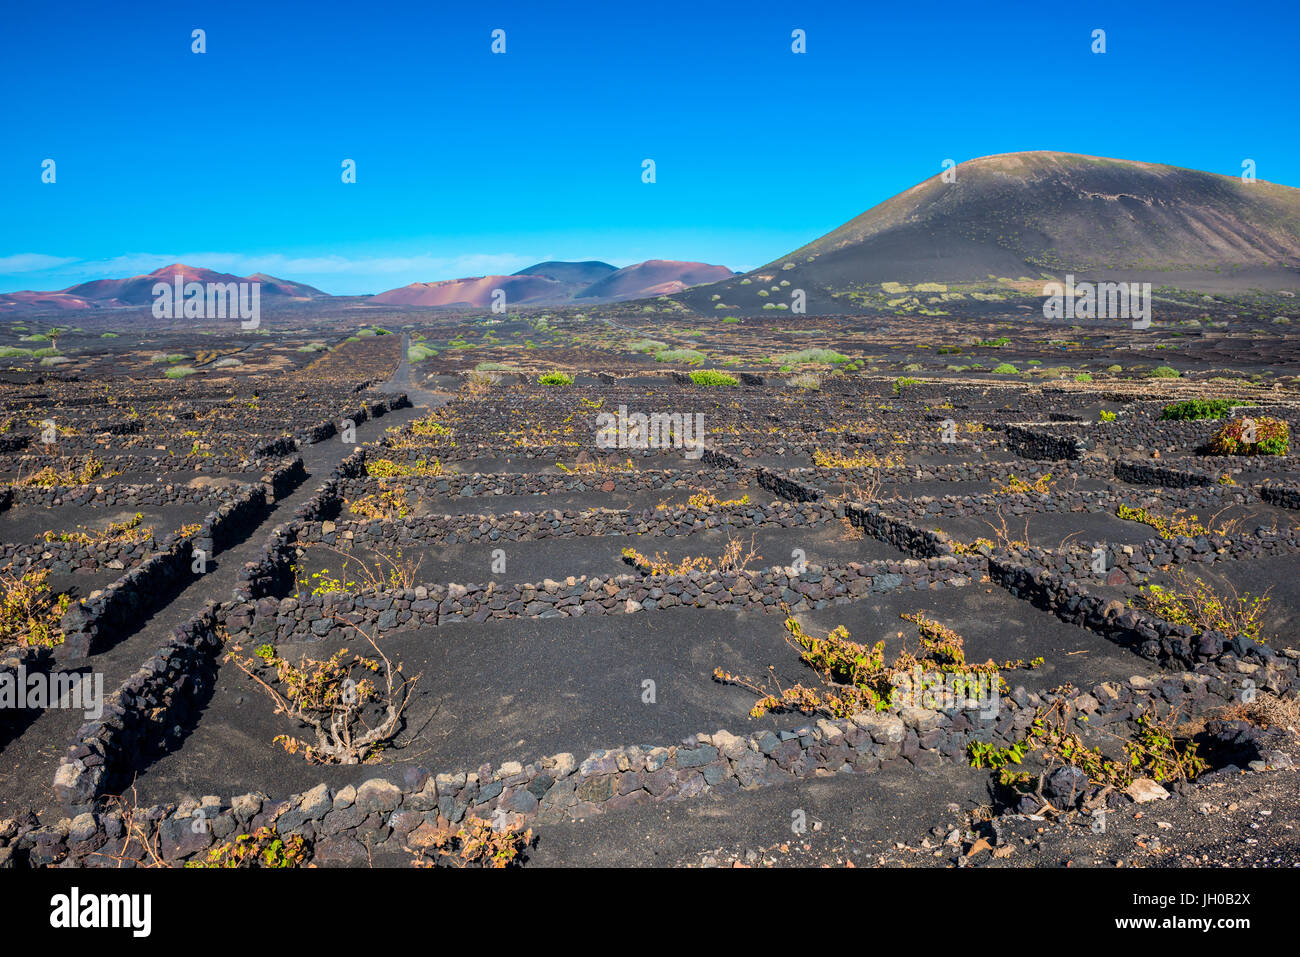 Viñedos En el paisaje volcánico de Lanzarote, Islas Canarias Foto de stock